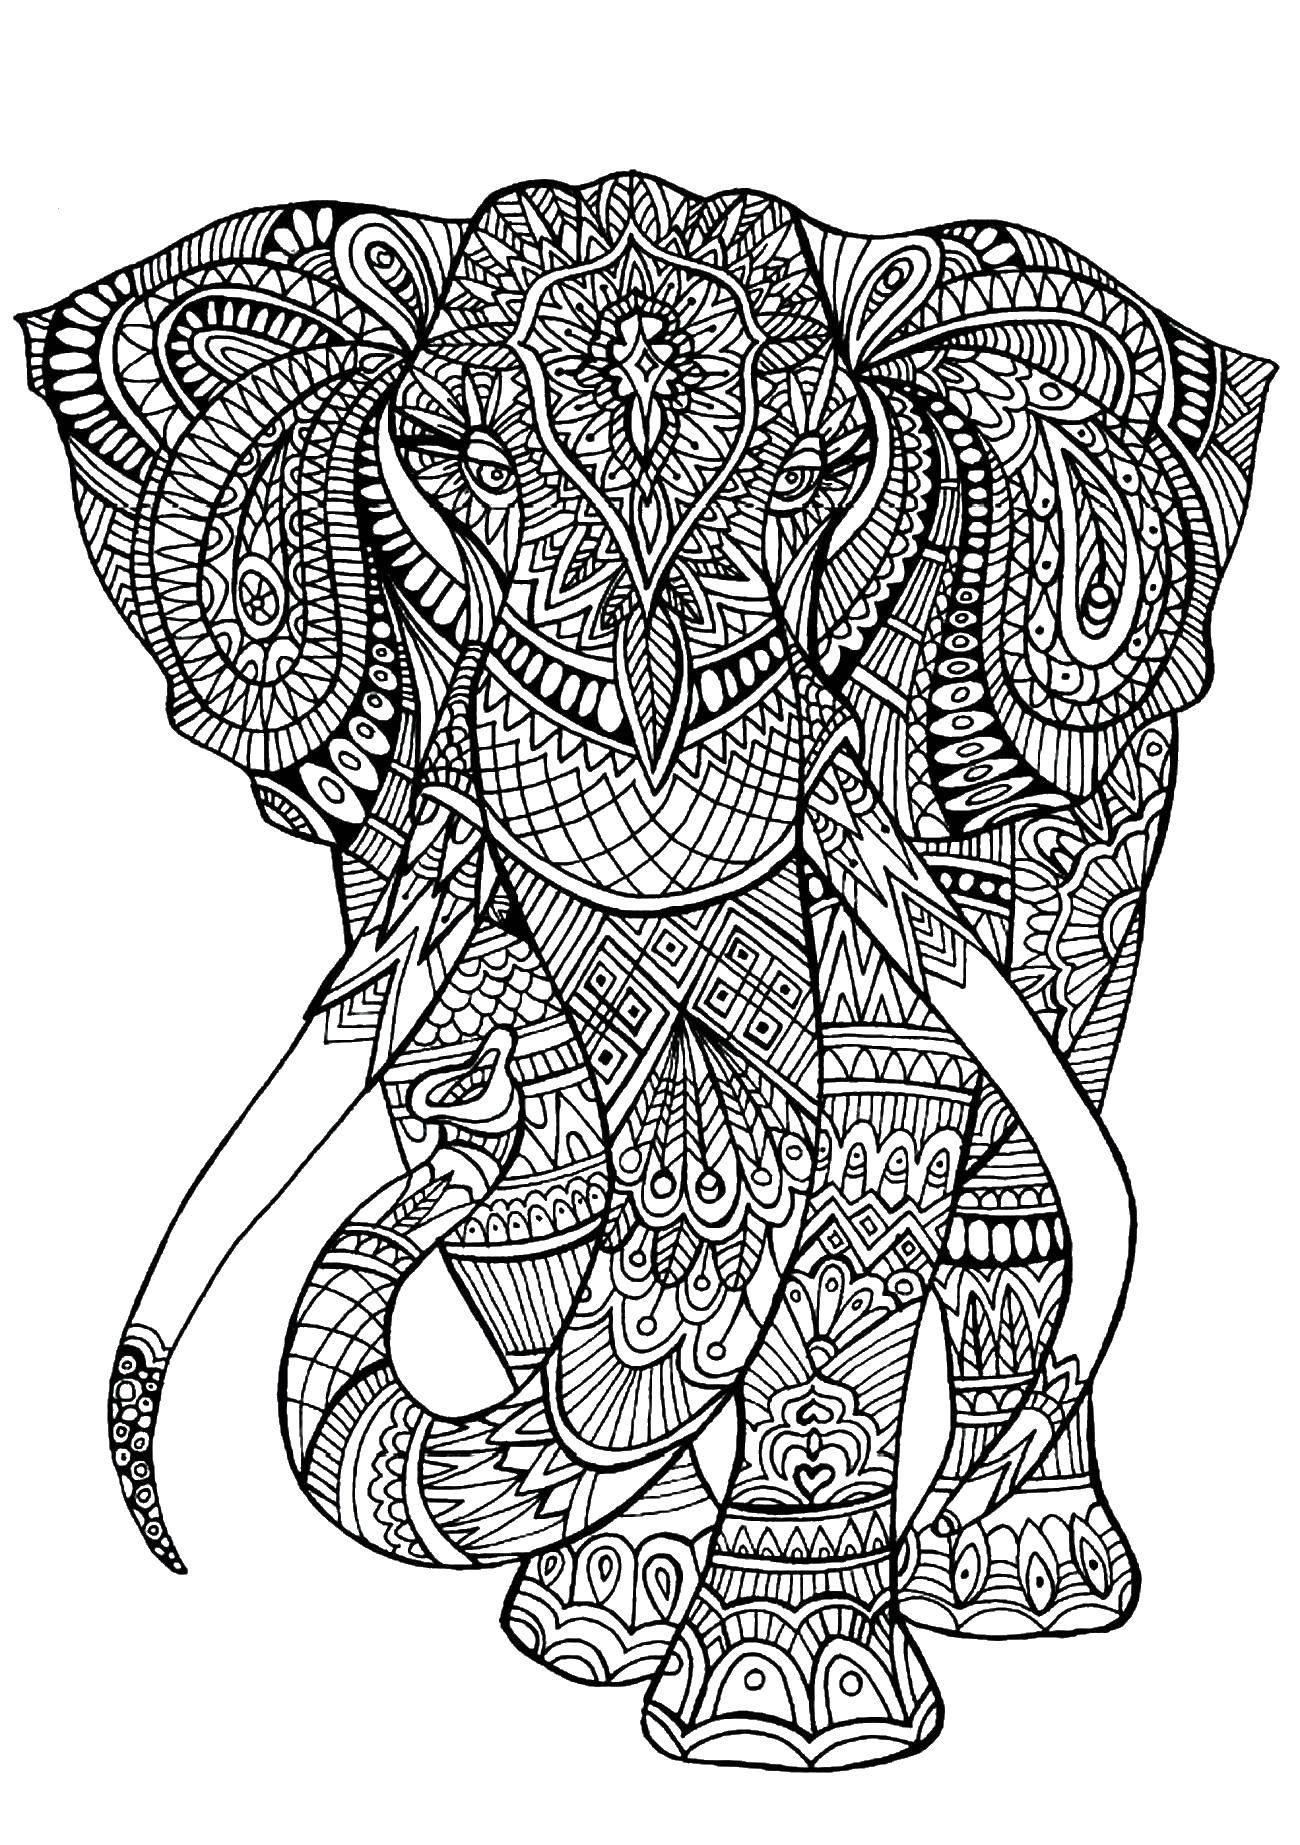 Опис: розмальовки  Візерунковий слон. Категорія: візерунки. Теги:  візерунки, тварини, слони, слон.